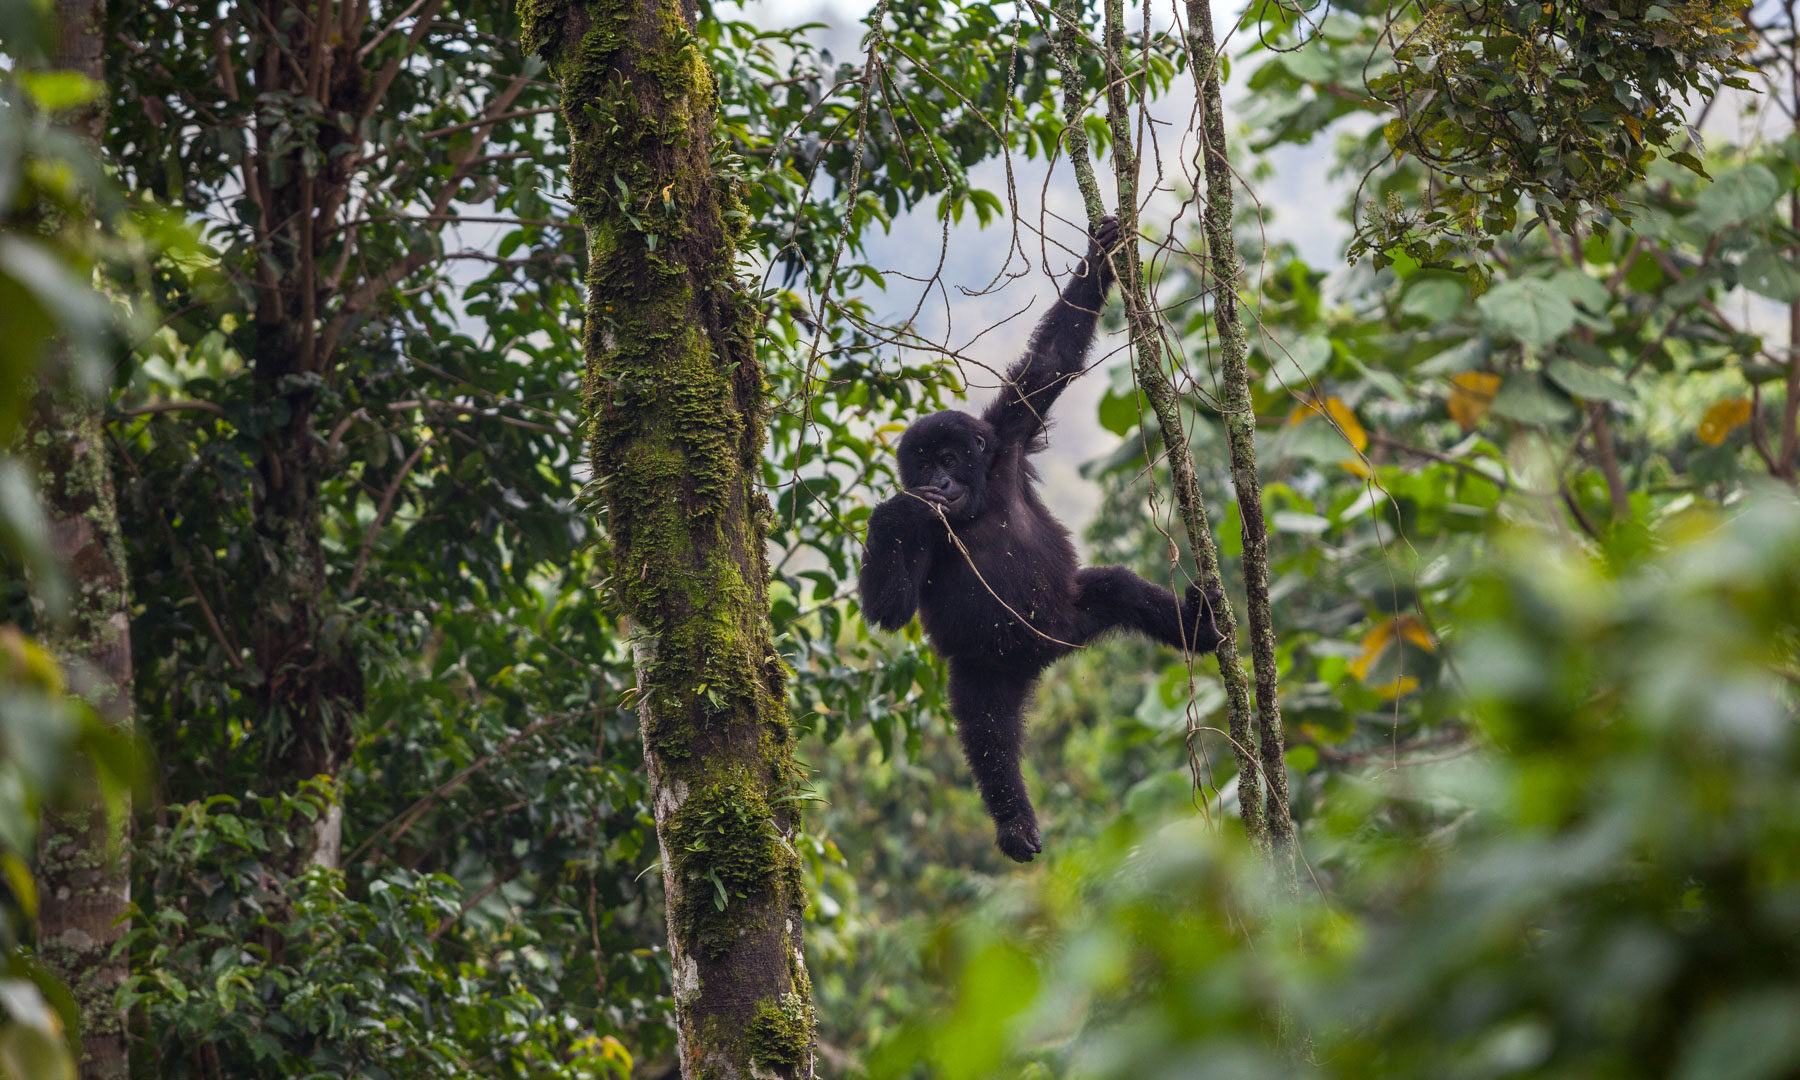 Congo: Visiting Virunga National Park